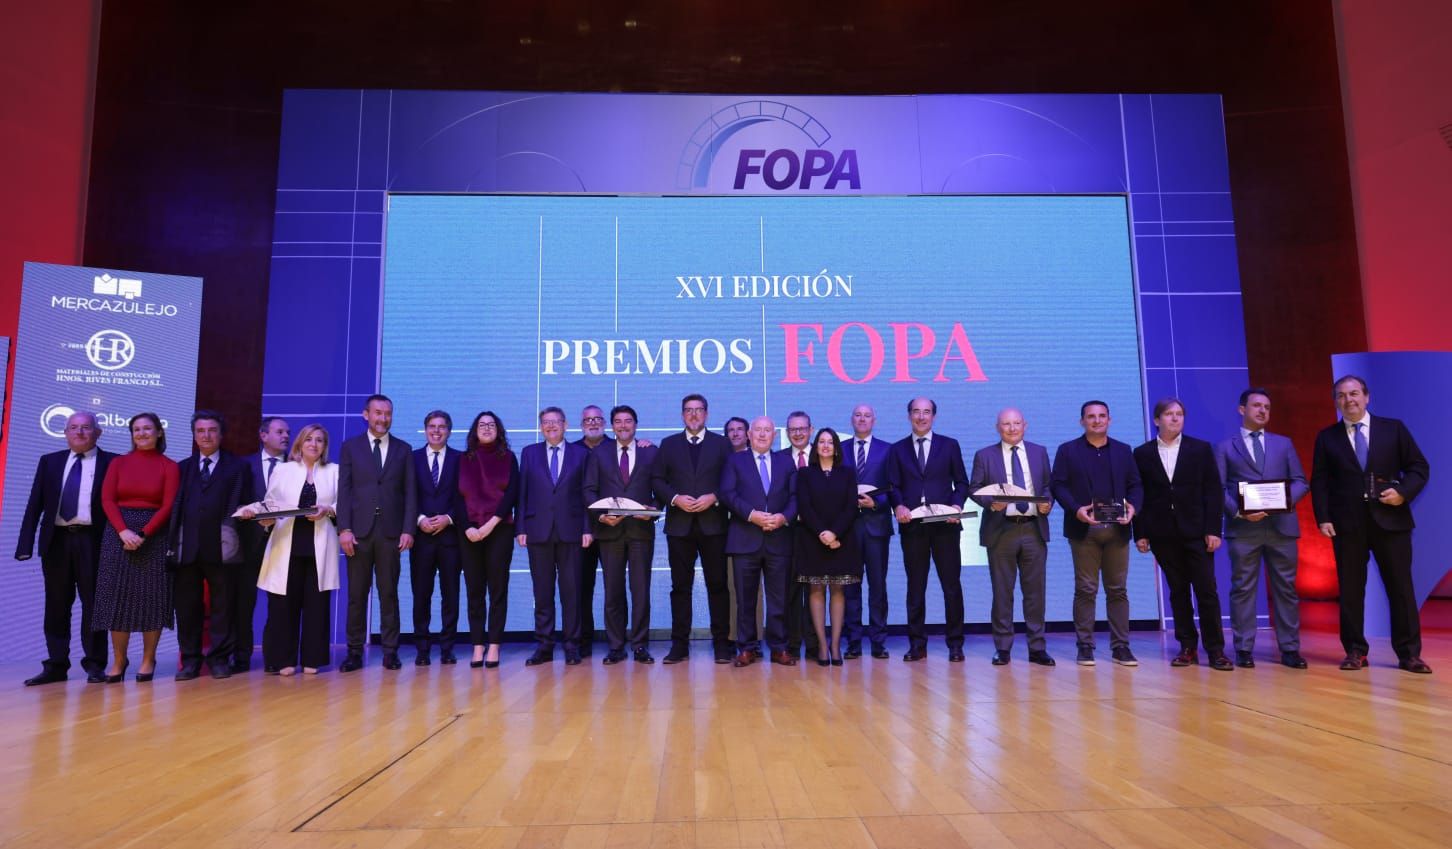 Foto de familia de premiados y cargos junto al presidente Puig y la consellera Rebeca Torró